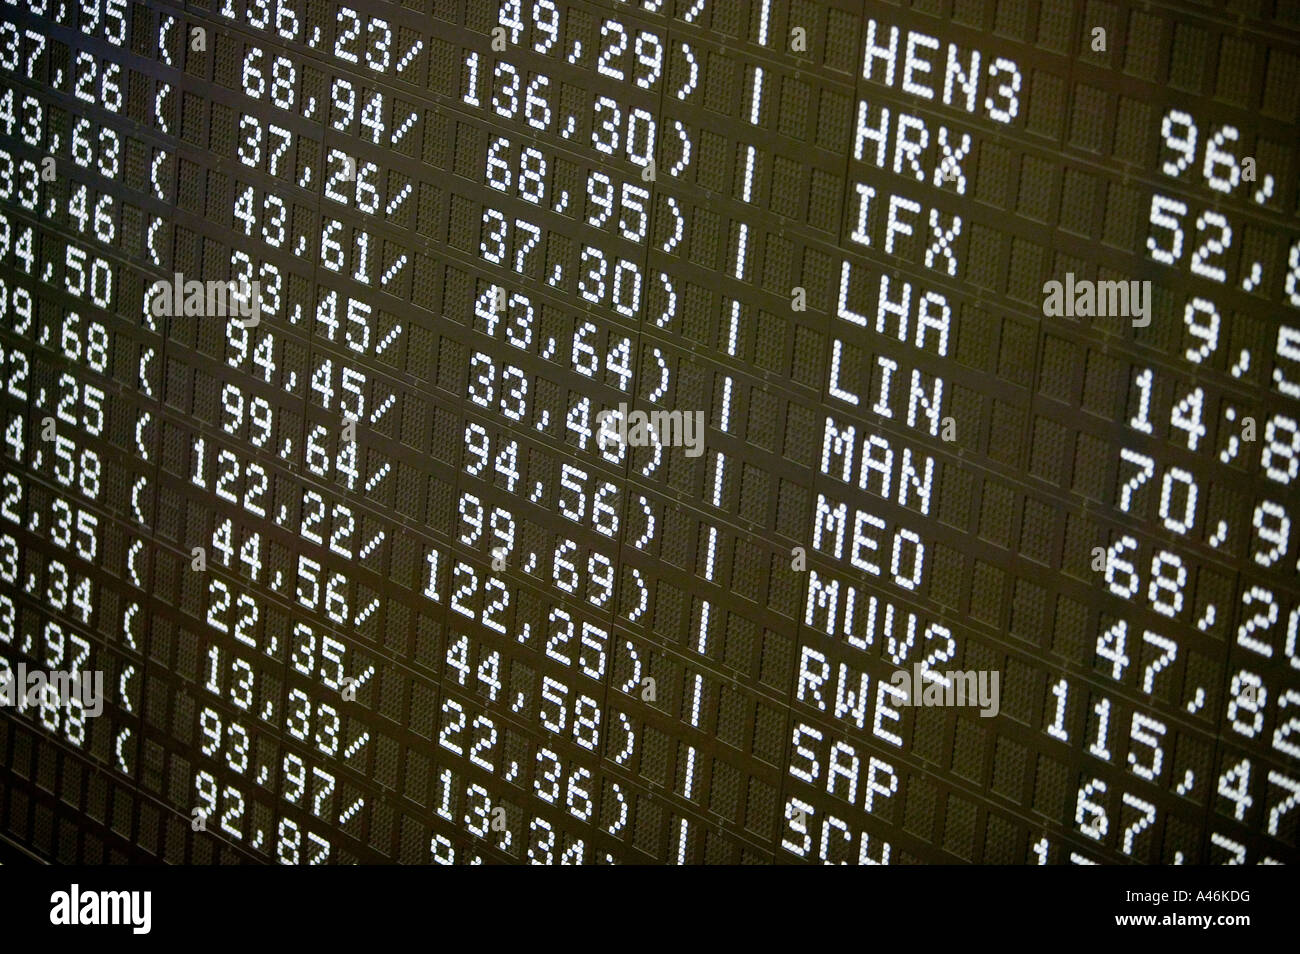 Zahlen auf eine Anzeigetafel an der Deutschen Börse in Frankfurt am Main Stockfoto